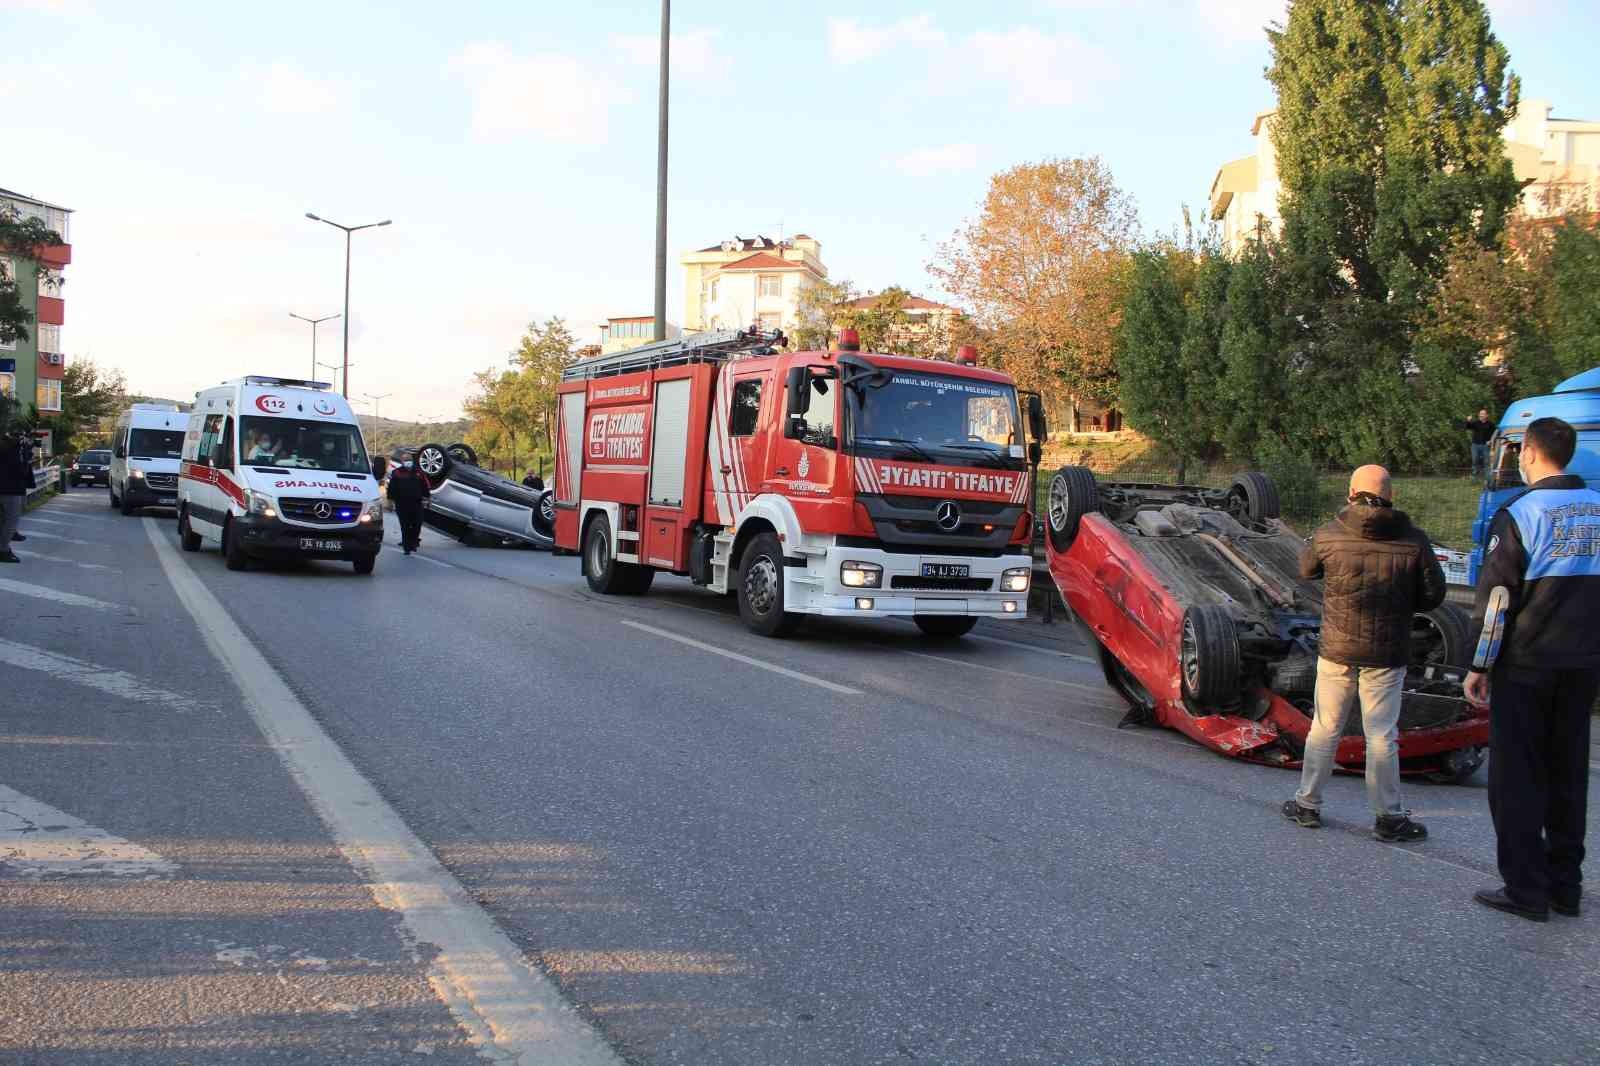 Kartal’da ilginç kaza, 2 araç aynı anda takla attı: 1 yaralı #istanbul